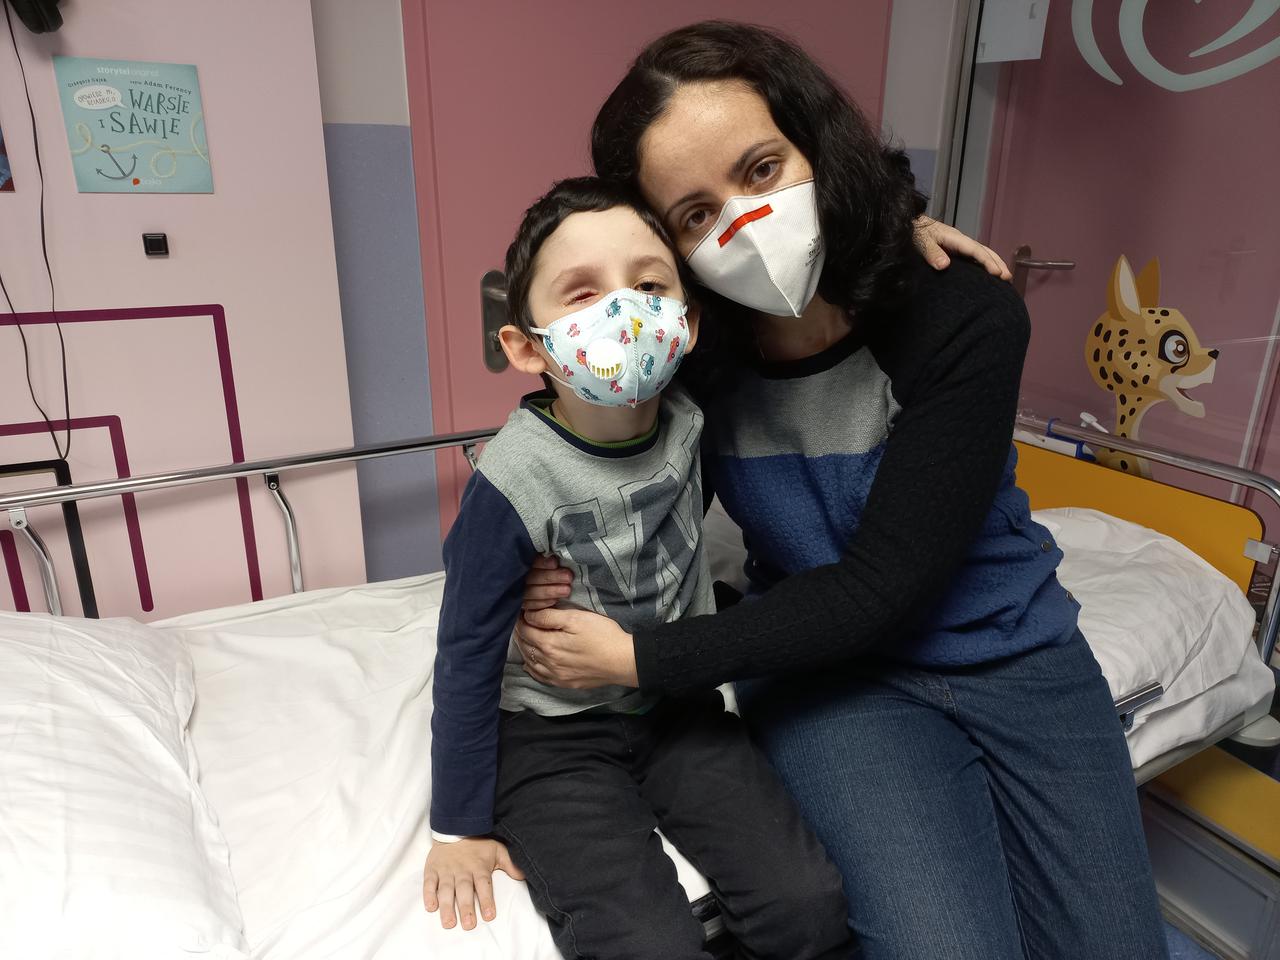 Wojna przerwała im walkę o zdrowie. Mali pacjenci z Ukrainy trafili do Centrum Zdrowia Dziecka